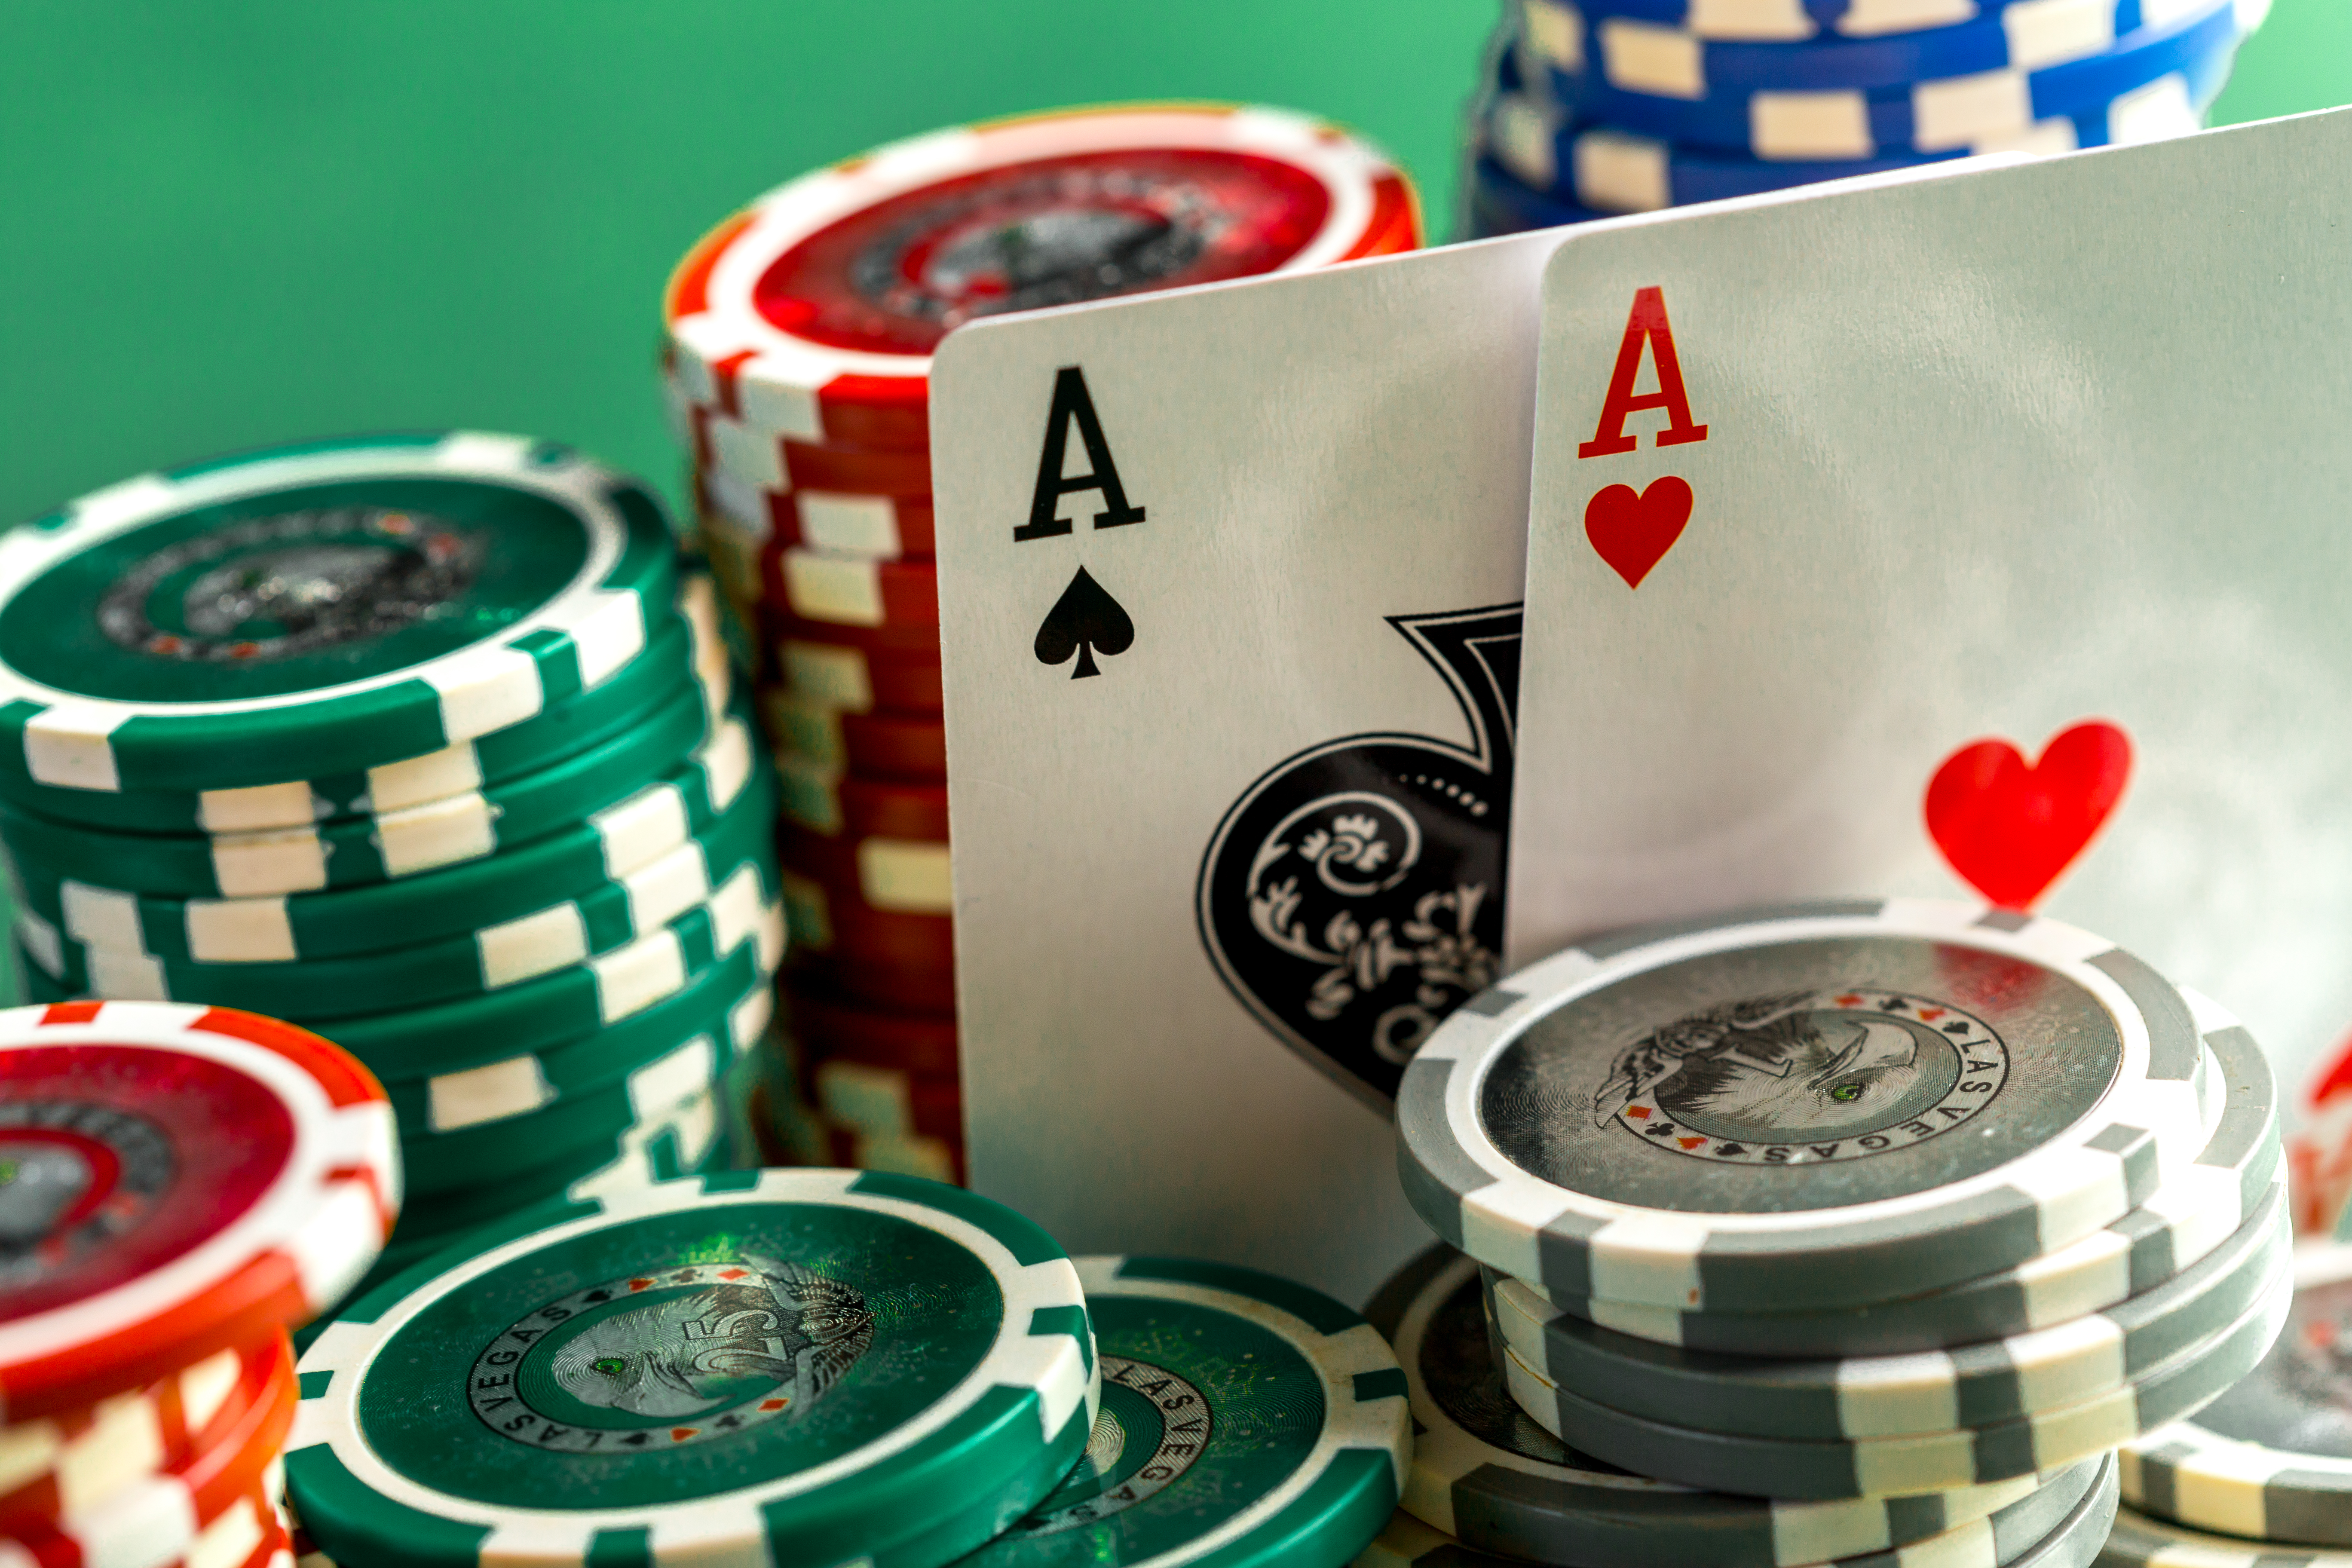 cards-chips-poker-green-table.jpg